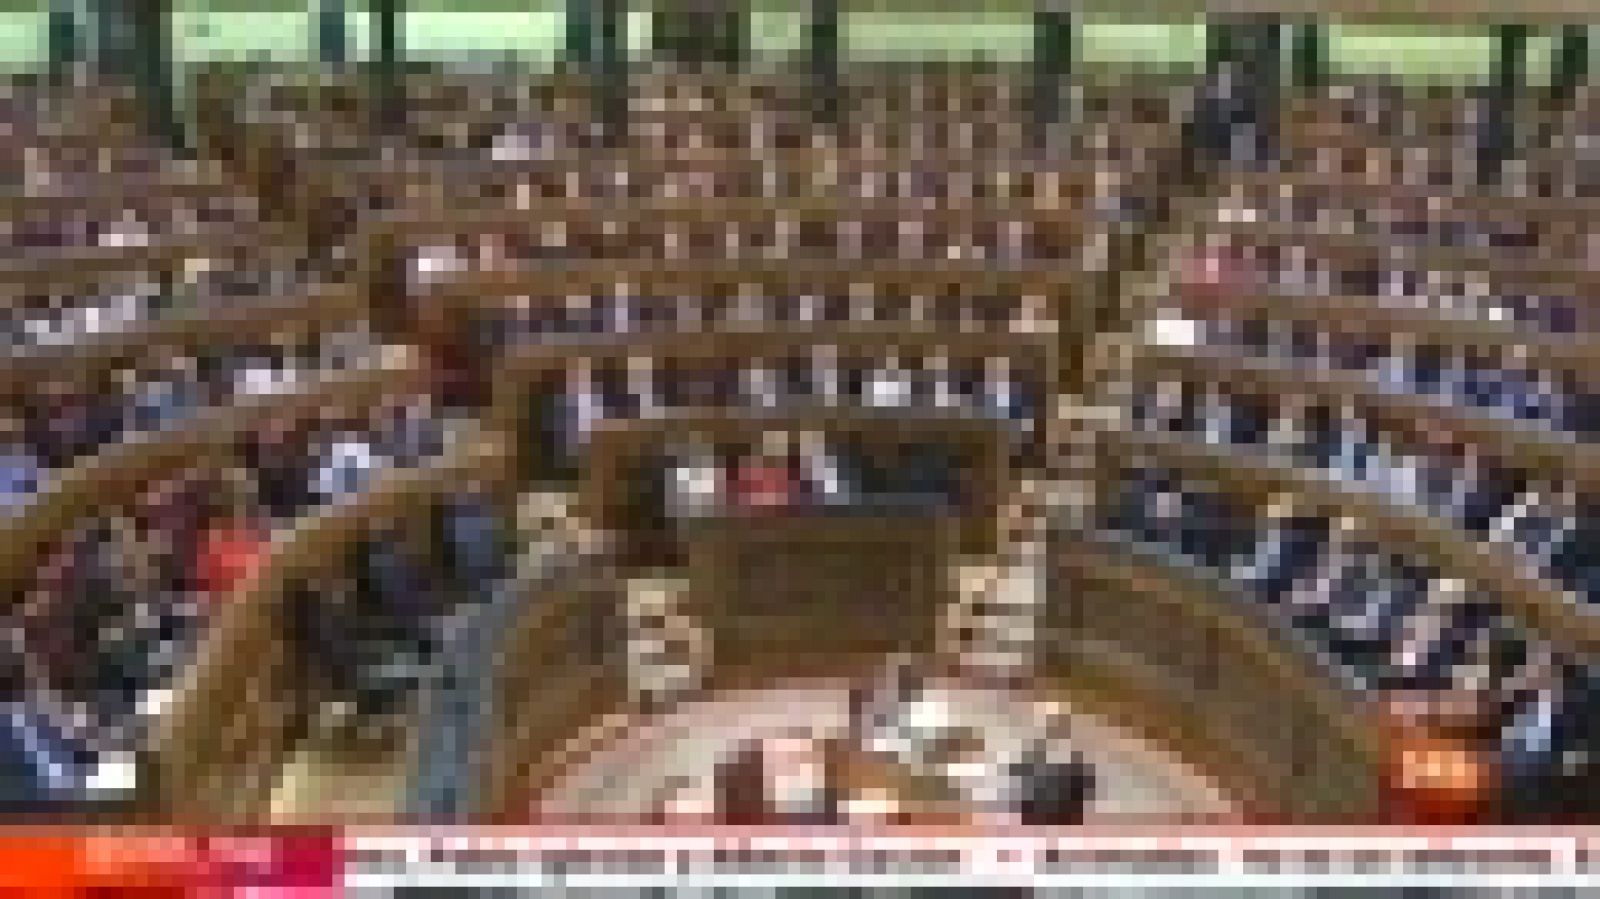 Parlamento - Conoce el parlamento - Histórico de suplicatorios en el Congreso - 26/11/2016